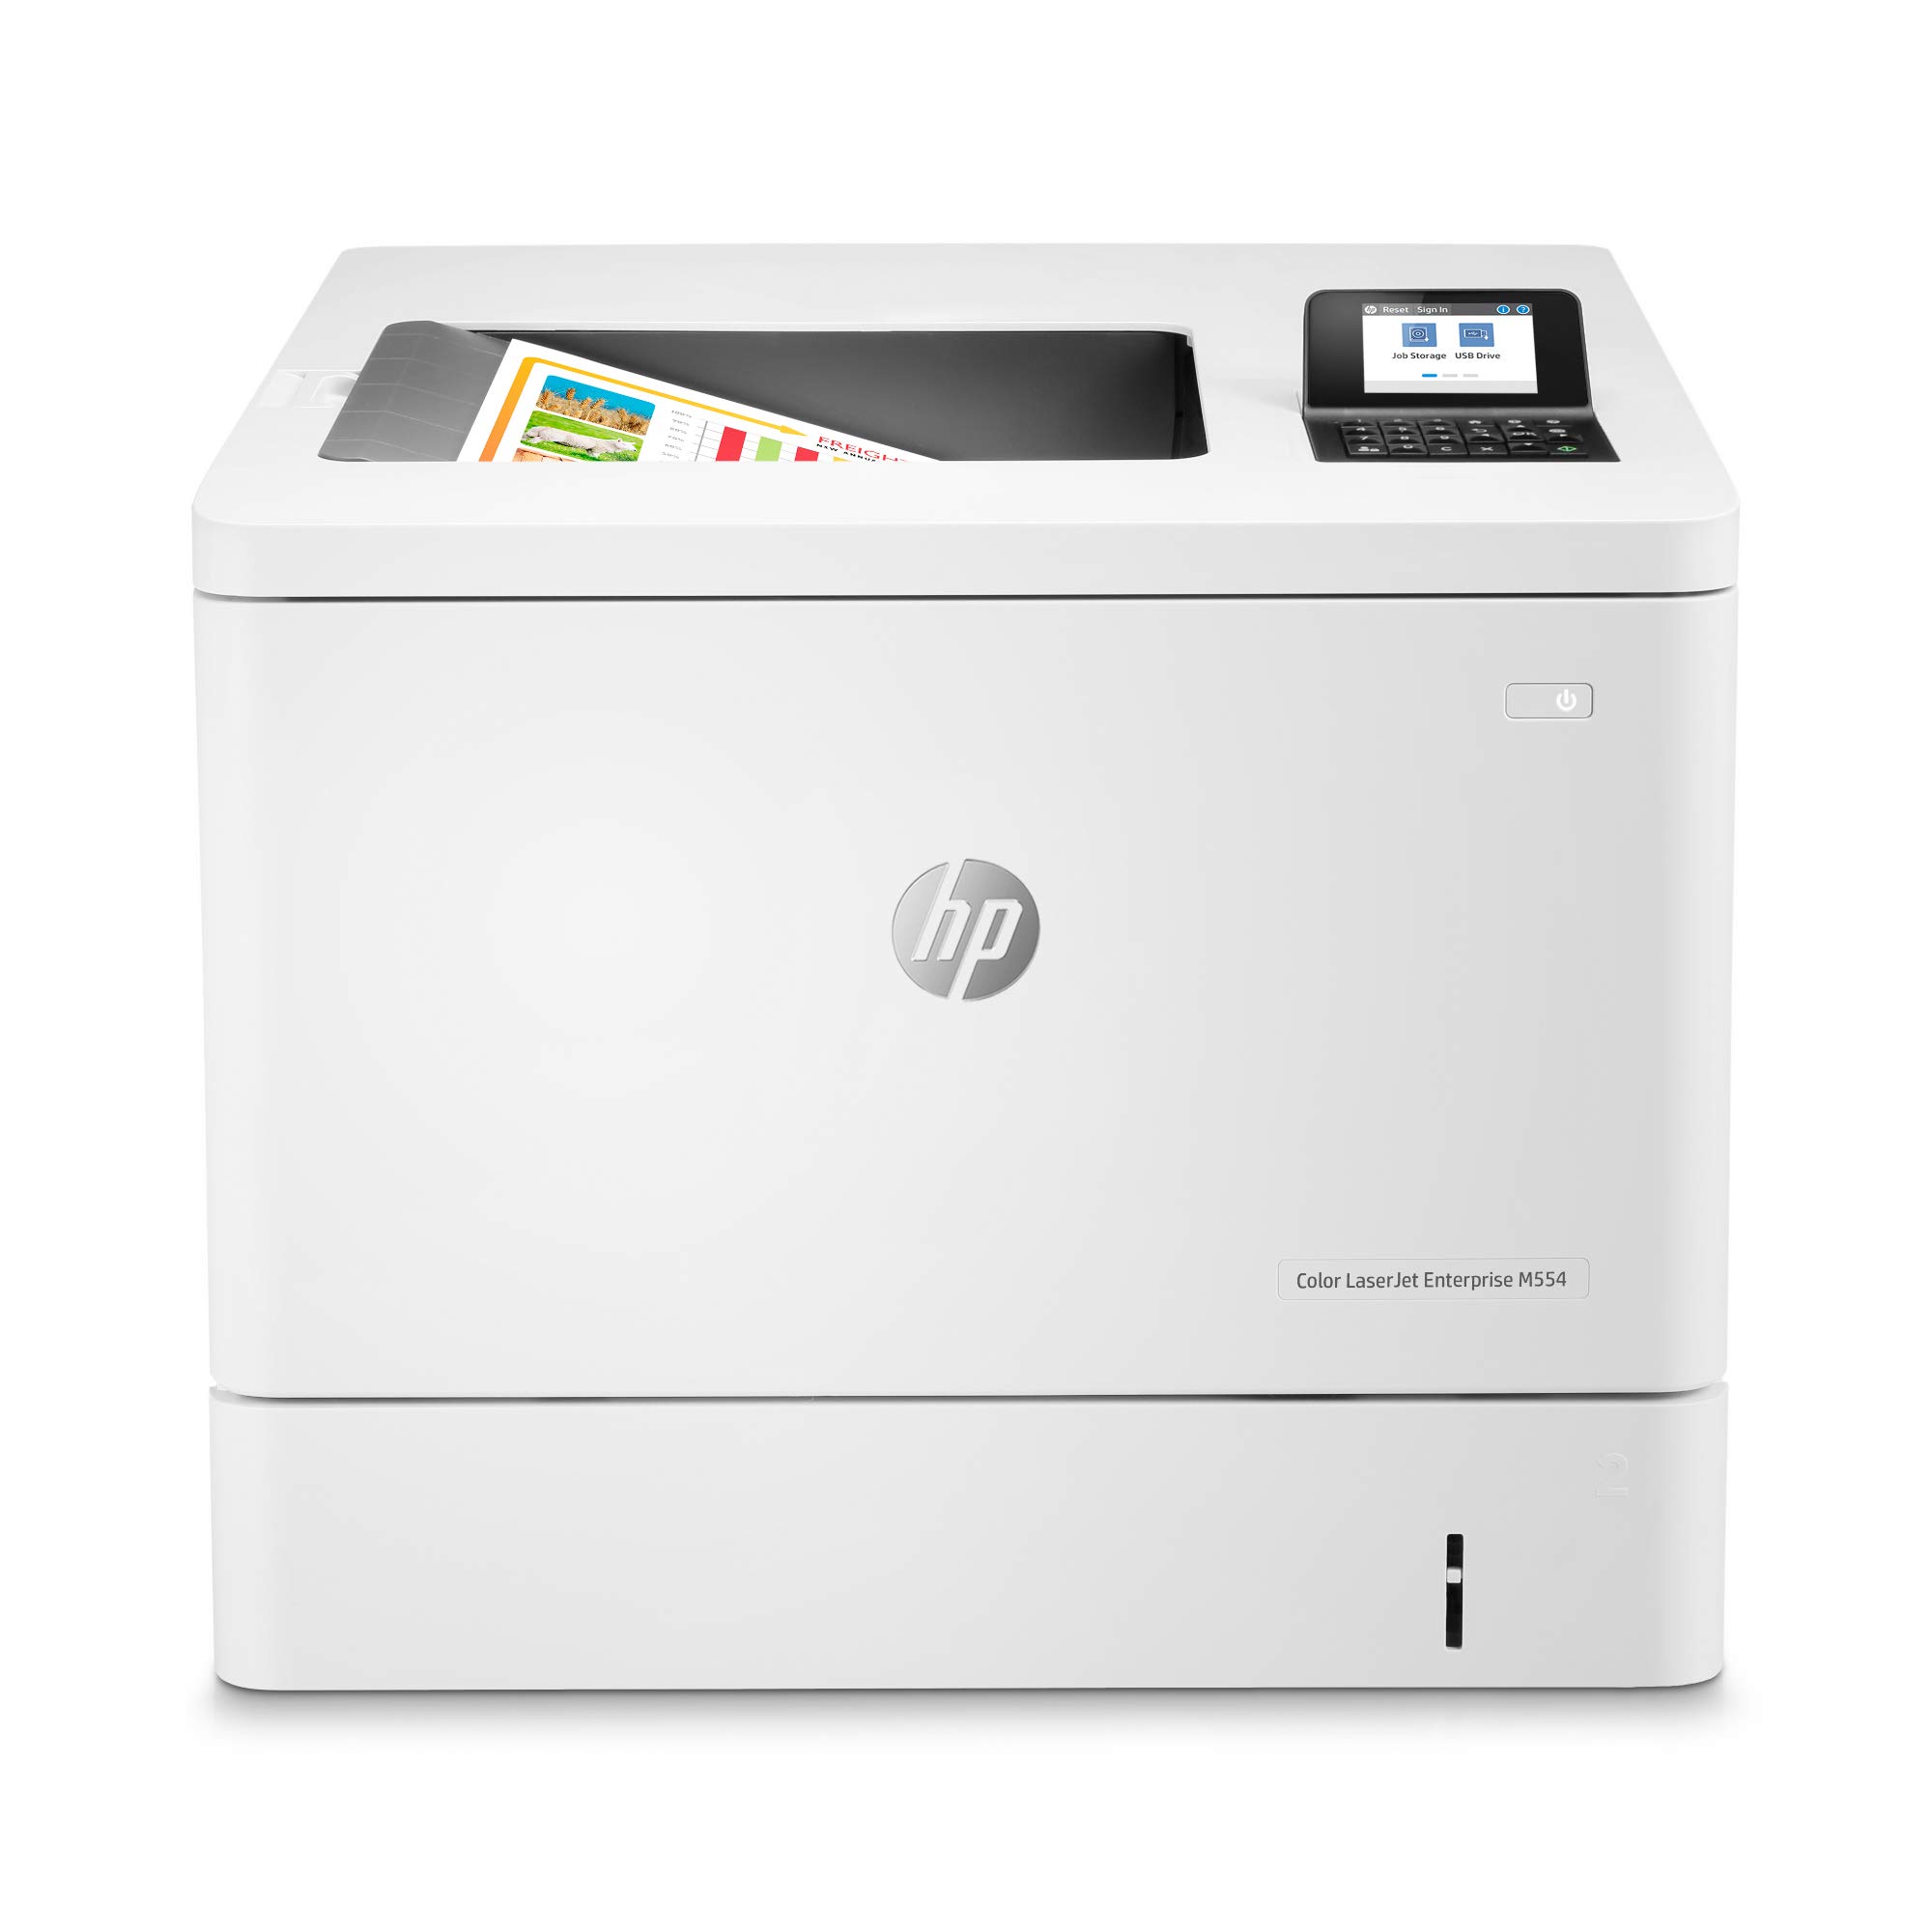 HP कलर लेजरजेट एंटरप्राइज M554dn डुप्लेक्स प्रिंटर (7ZU81A)